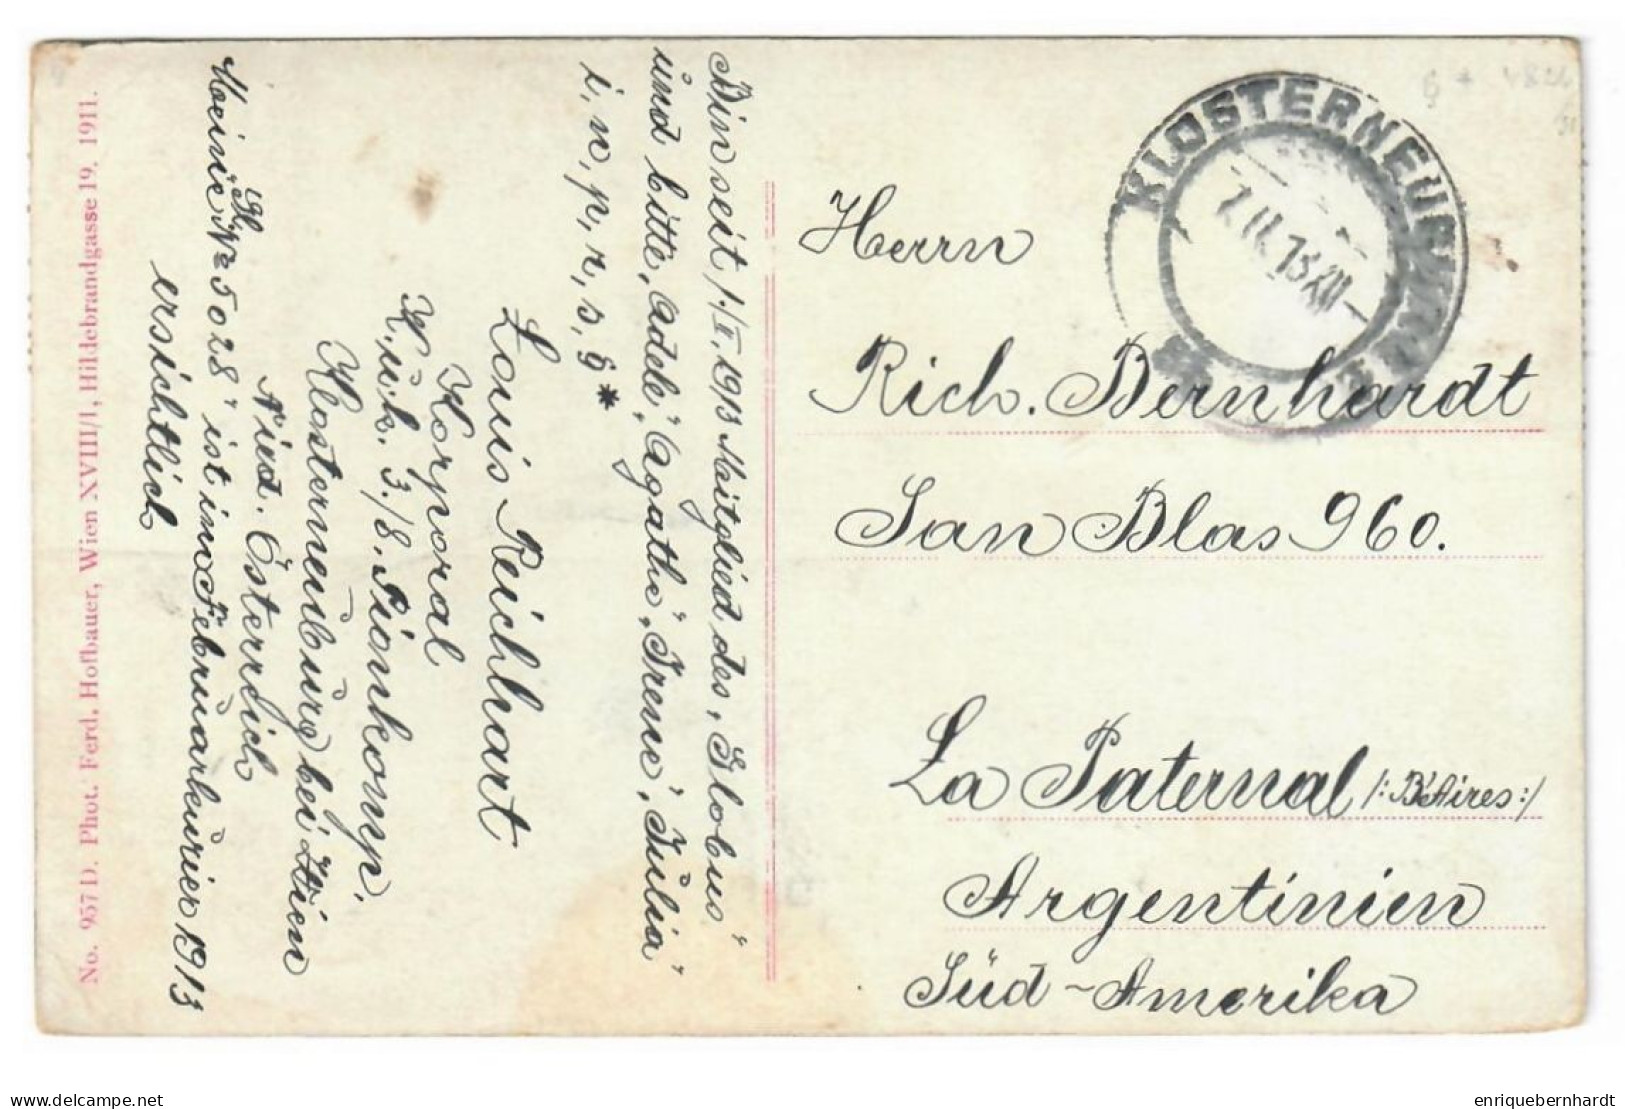 ÖSTERREICH // KLOSTERNEUBURG // STIFT KLOSTERNEUBURG // 1913 - Klosterneuburg